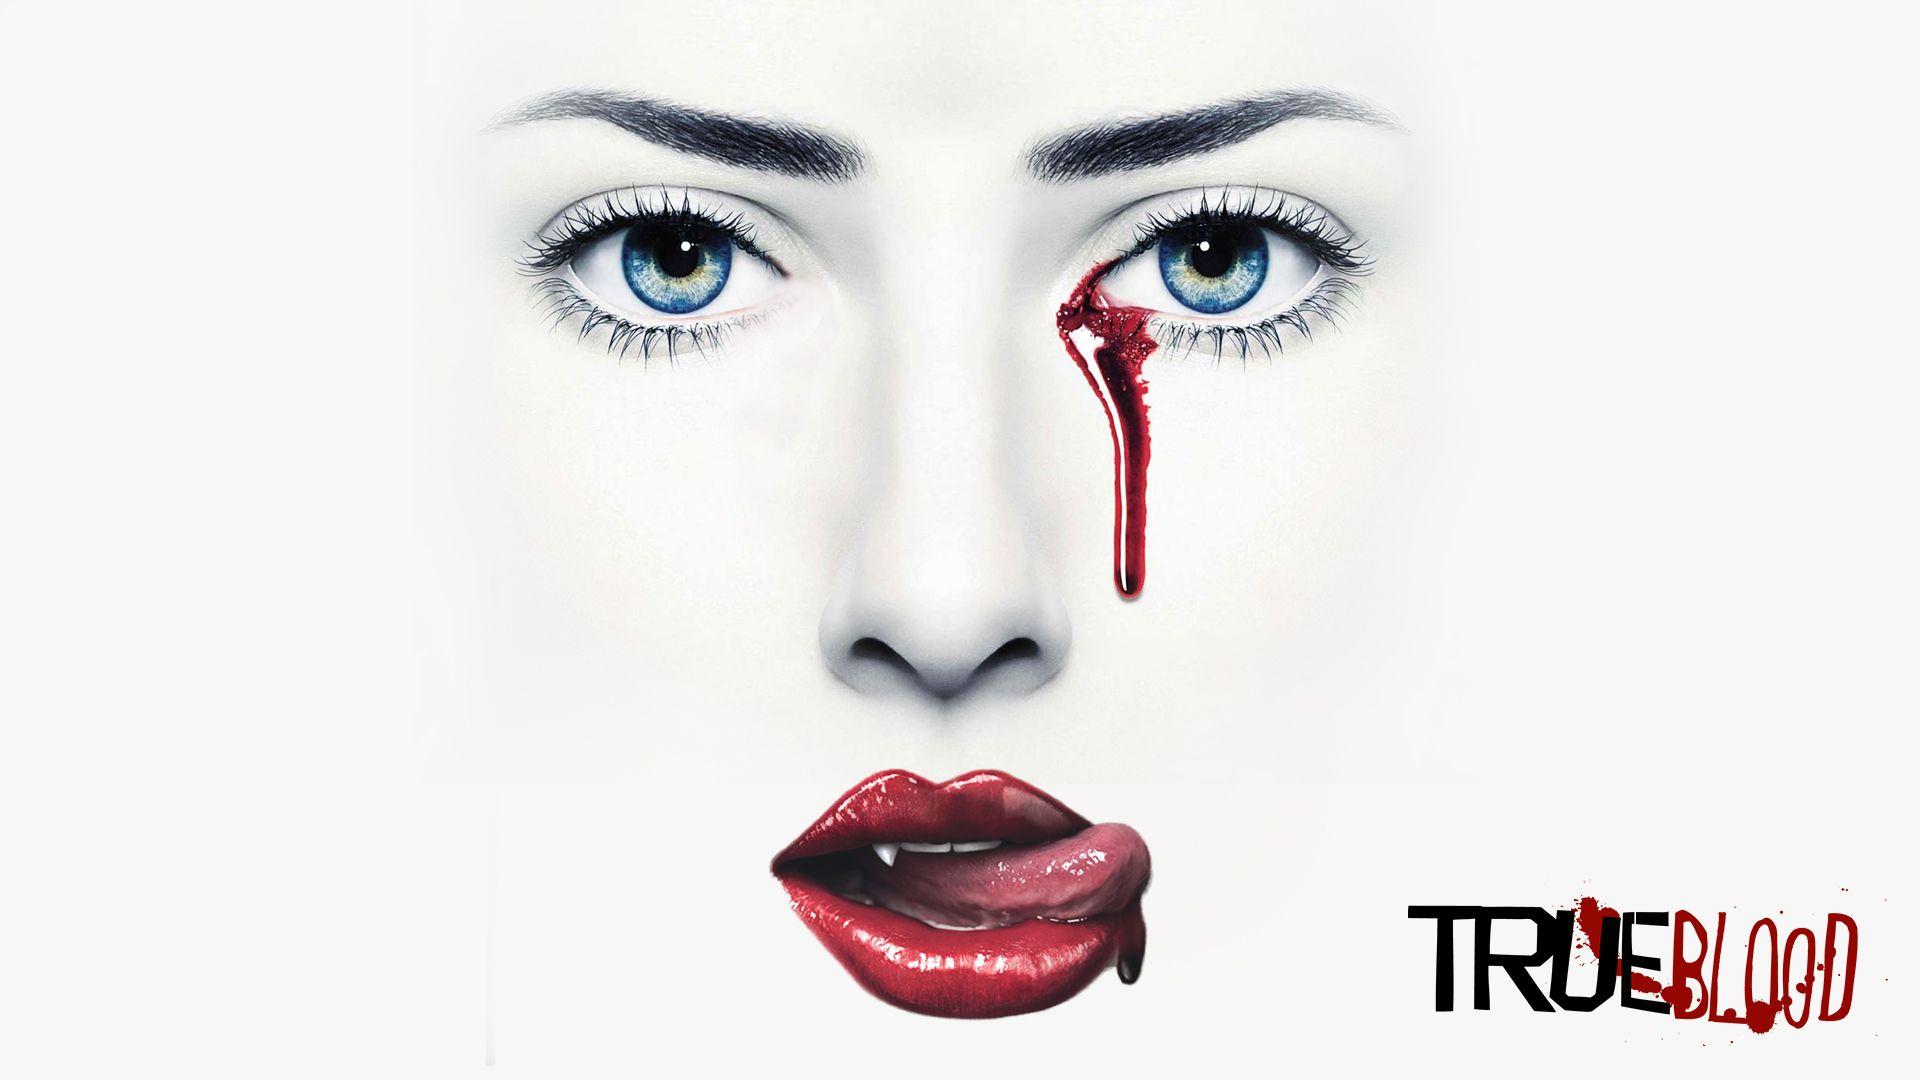 True Blood Wallpaper, True Blood Pics. Original 100